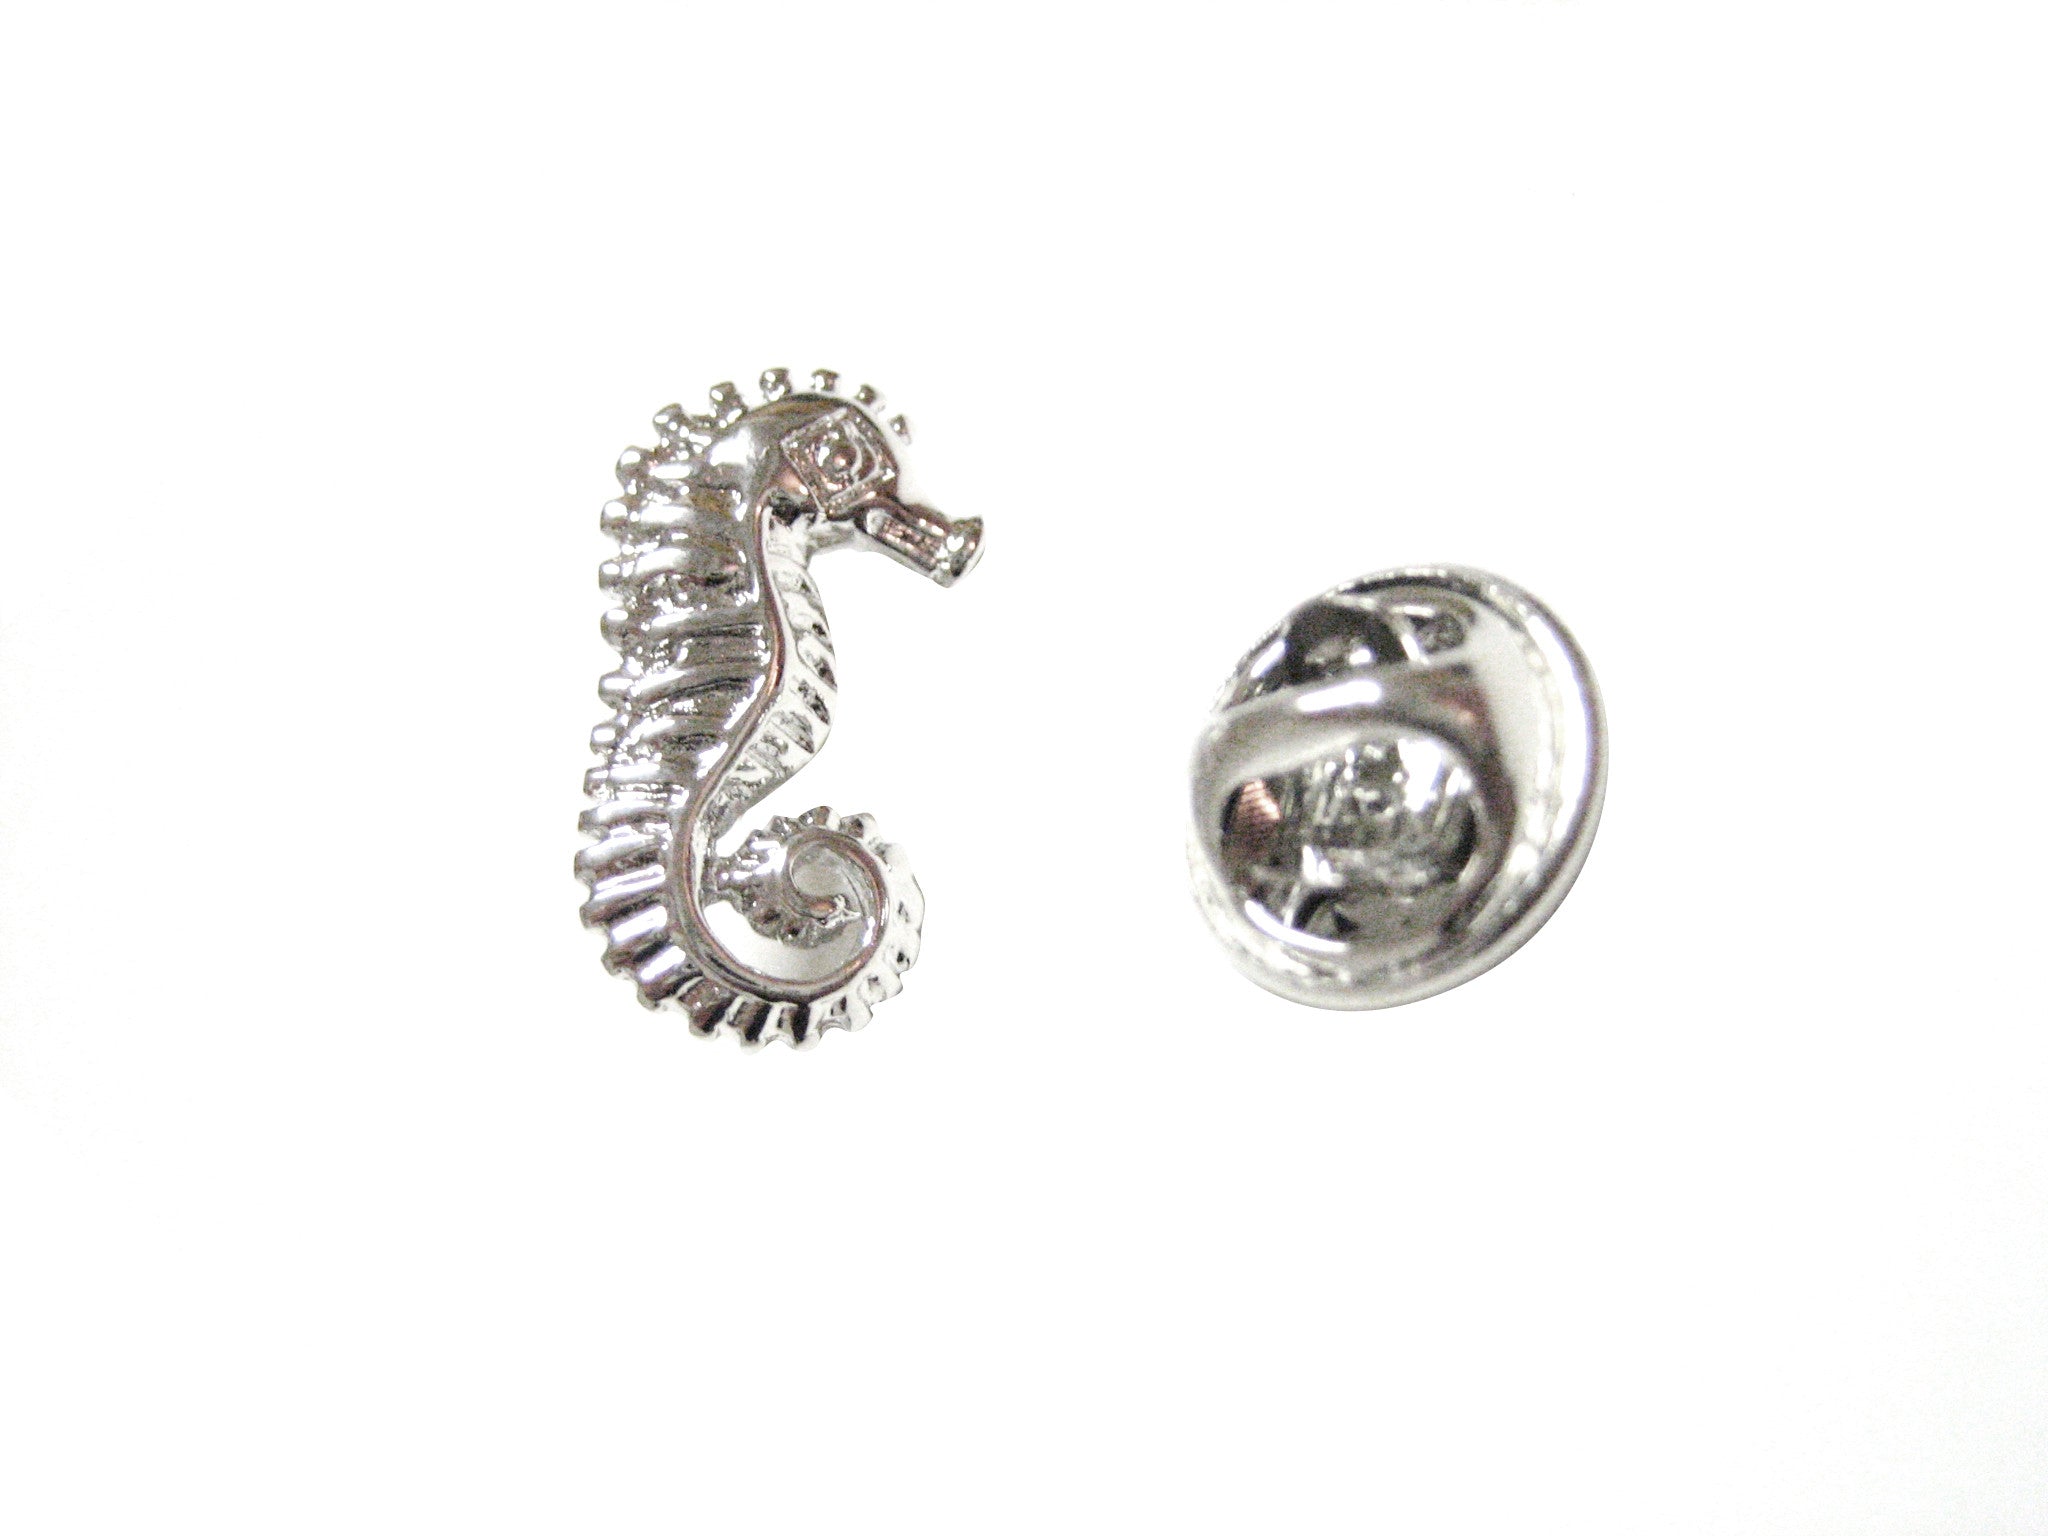 Sea Horse Pendant Lapel Pin